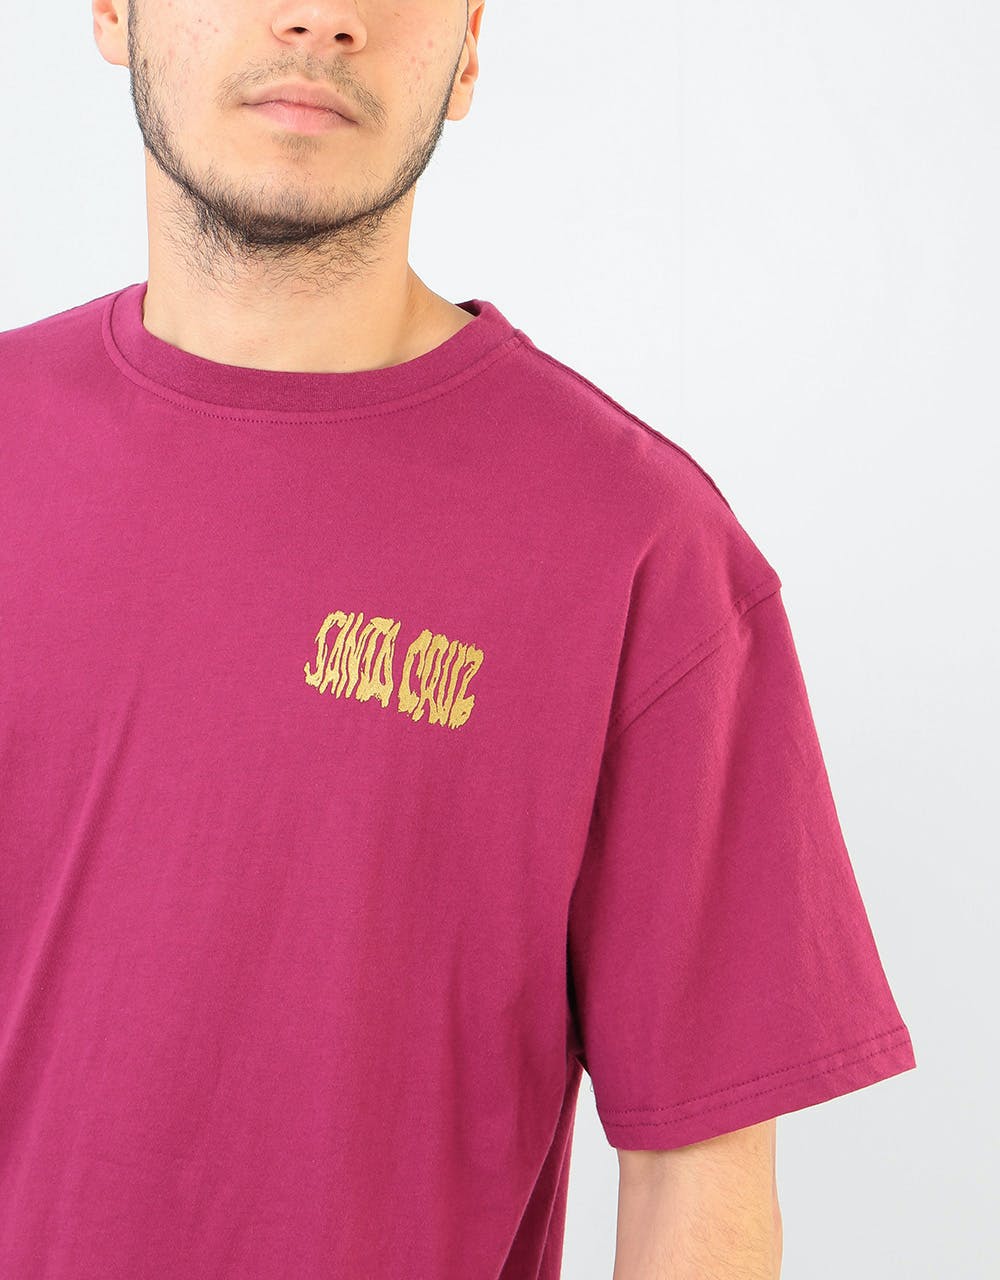 Santa Cruz Knox Firepit T-Shirt - Burgundy